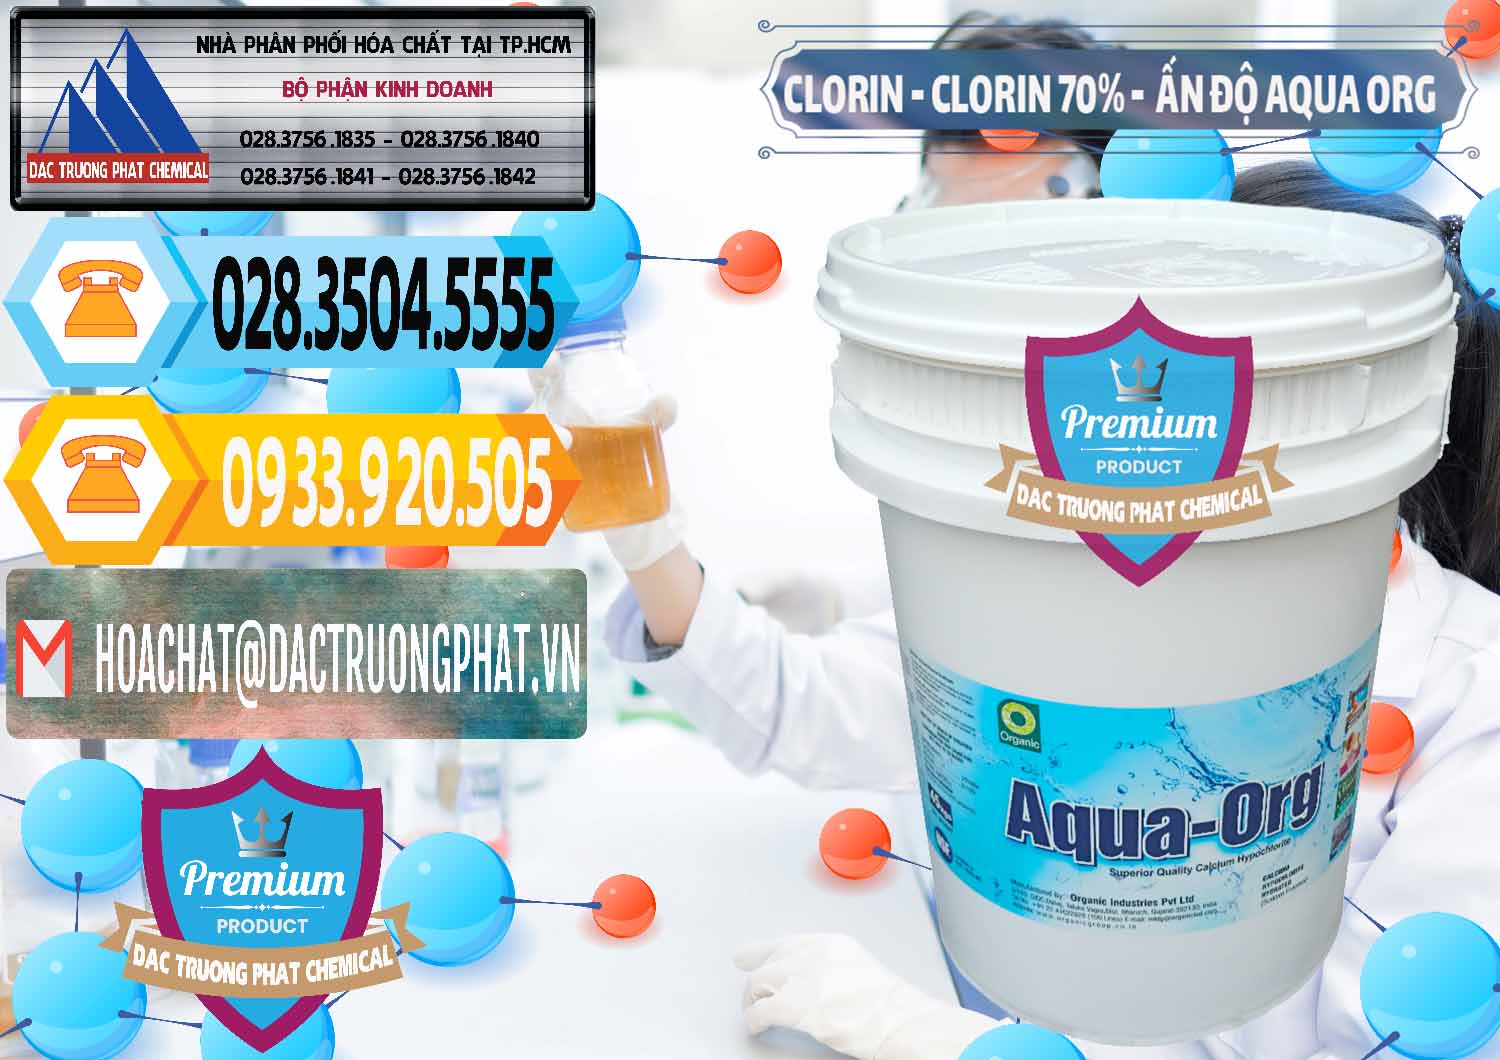 Công ty chuyên bán _ cung cấp Chlorine – Clorin Ấn Độ Aqua ORG Organic India - 0051 - Nơi cung cấp _ phân phối hóa chất tại TP.HCM - hoachattayrua.net